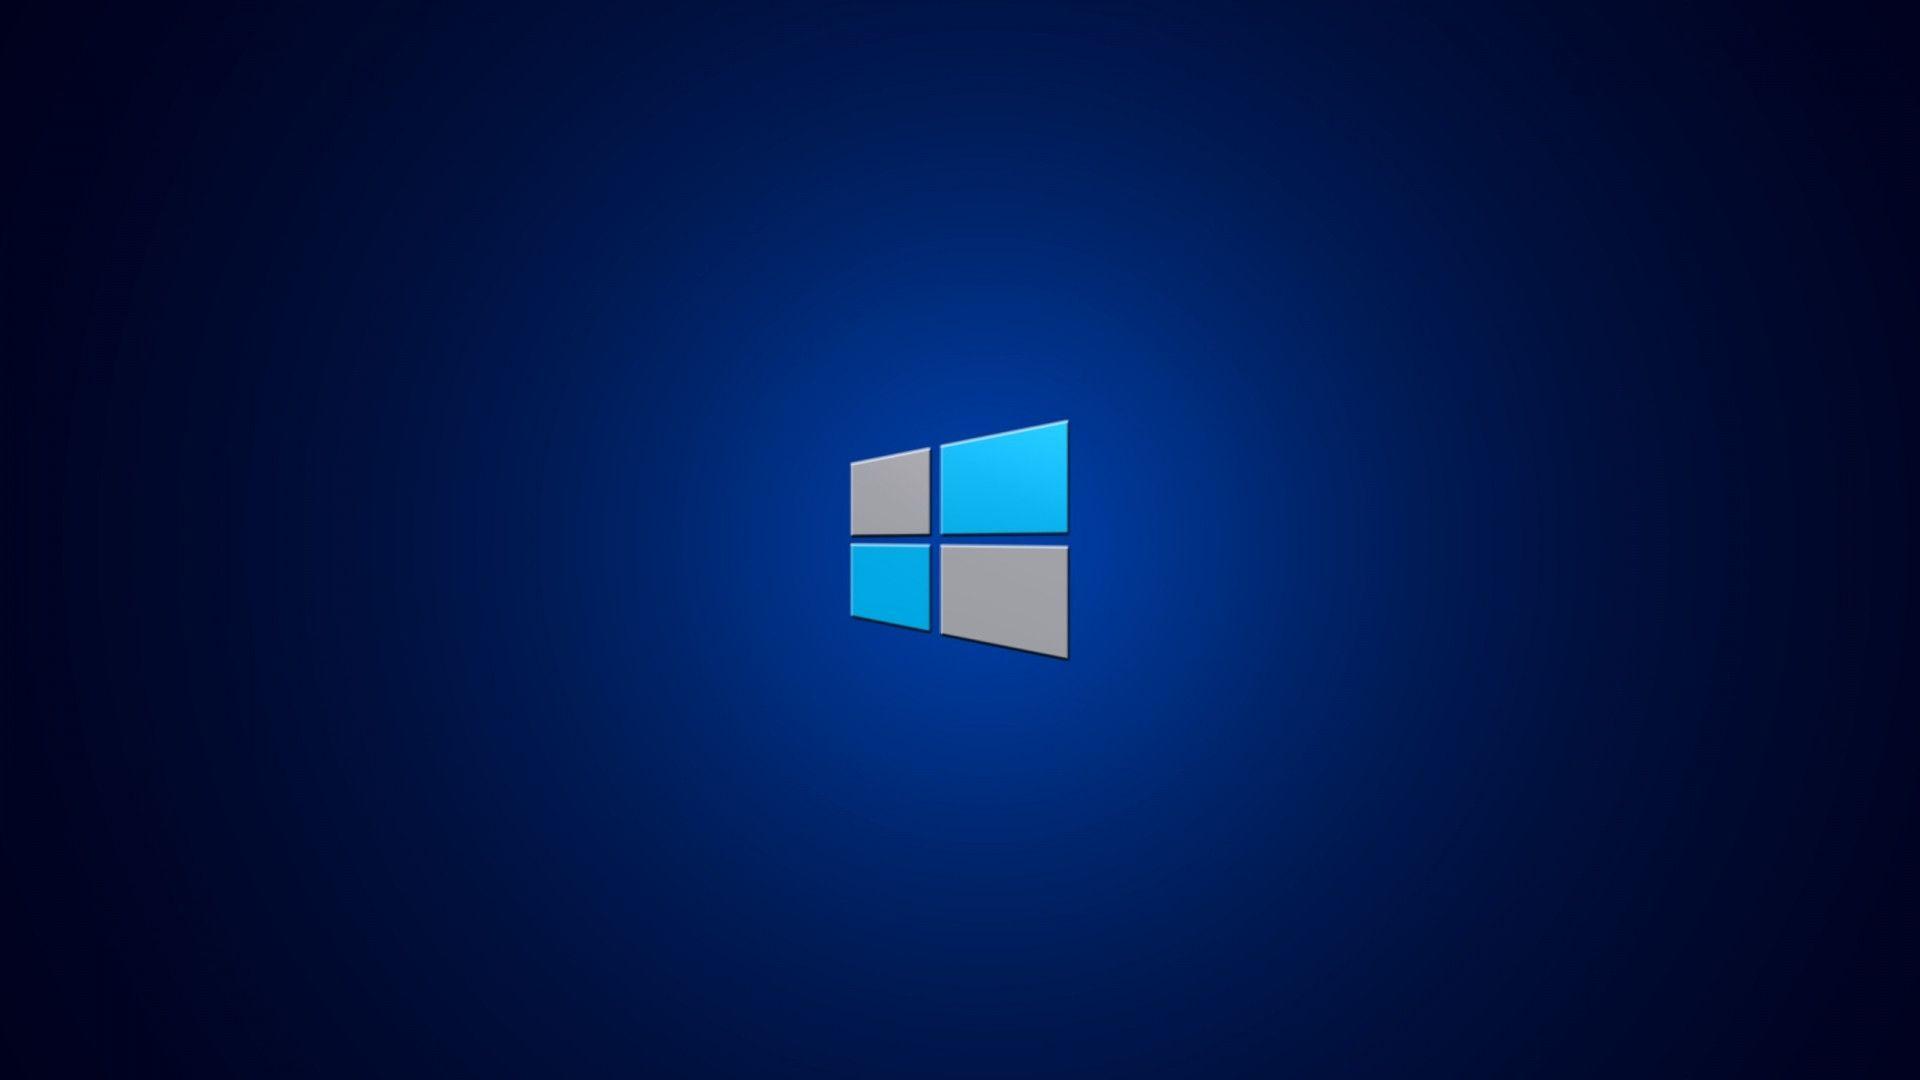 Hình nền windows 8.1: Với phiên bản windows mới nhất – 8.1, những hình nền đặc sắc và đẳng cấp cũng được ra mắt. Bằng những mẫu hình nền đa dạng, chất lượng, Windows 8.1 sẽ khiến cho màn hình máy tính của bạn trở nên đẹp hơn bao giờ hết. Hãy tha hồ trải nghiệm những mẫu hình nền này trên trang web của chúng tôi!